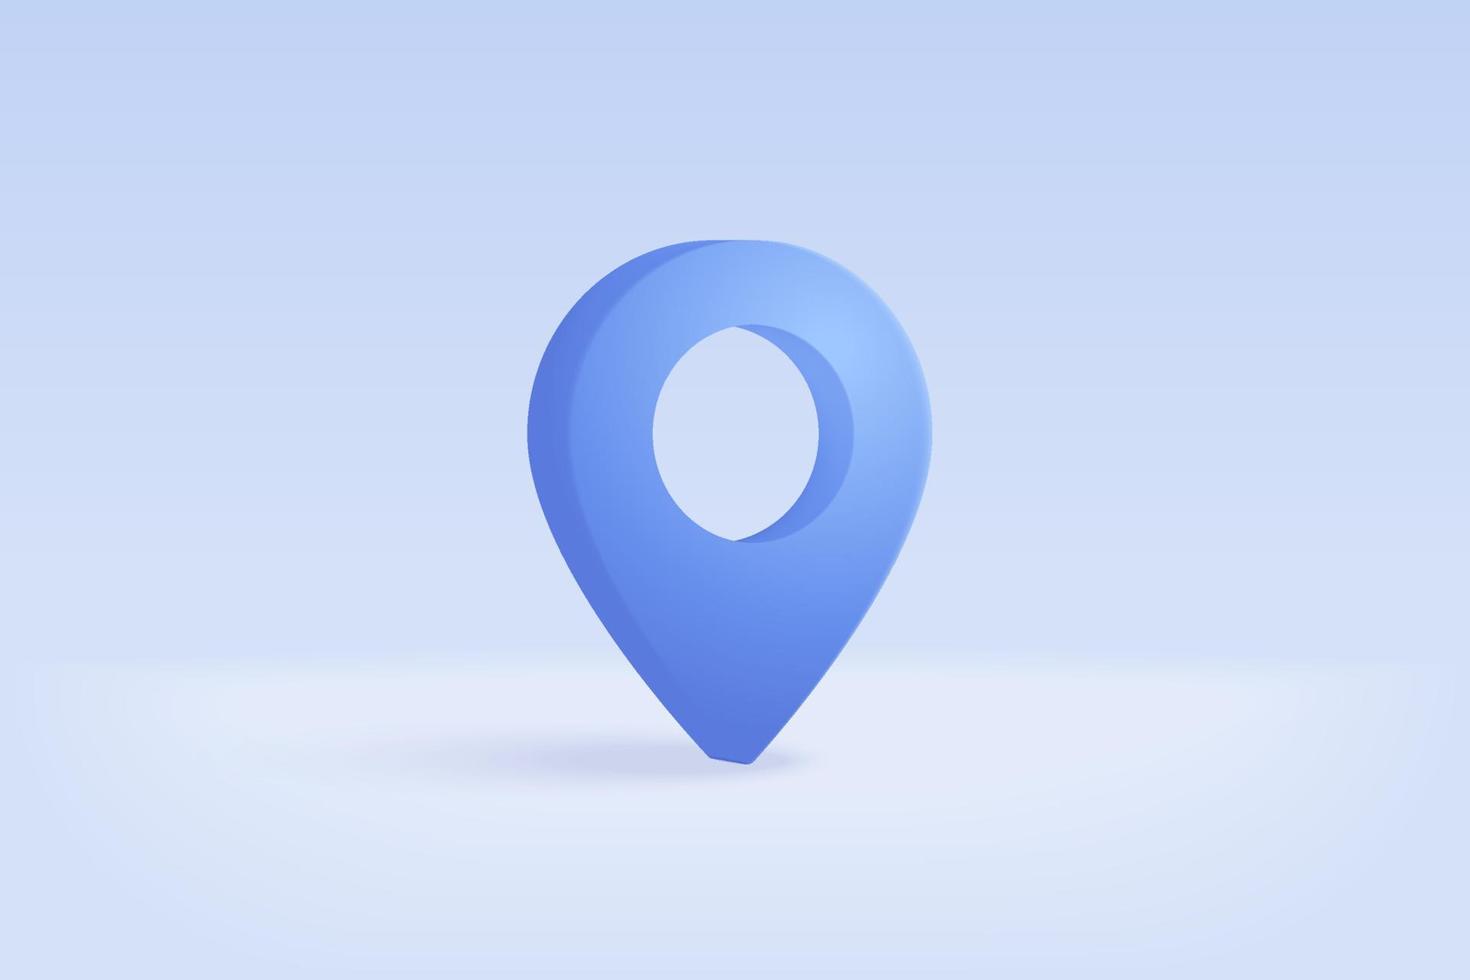 Marcador de punto de ubicación 3d del mapa o signo de icono de pin de navegación en fondo blanco aislado. la navegación es de color azul pastel con sombra en la dirección del mapa. 3d gps pin vector renderizado ilustración